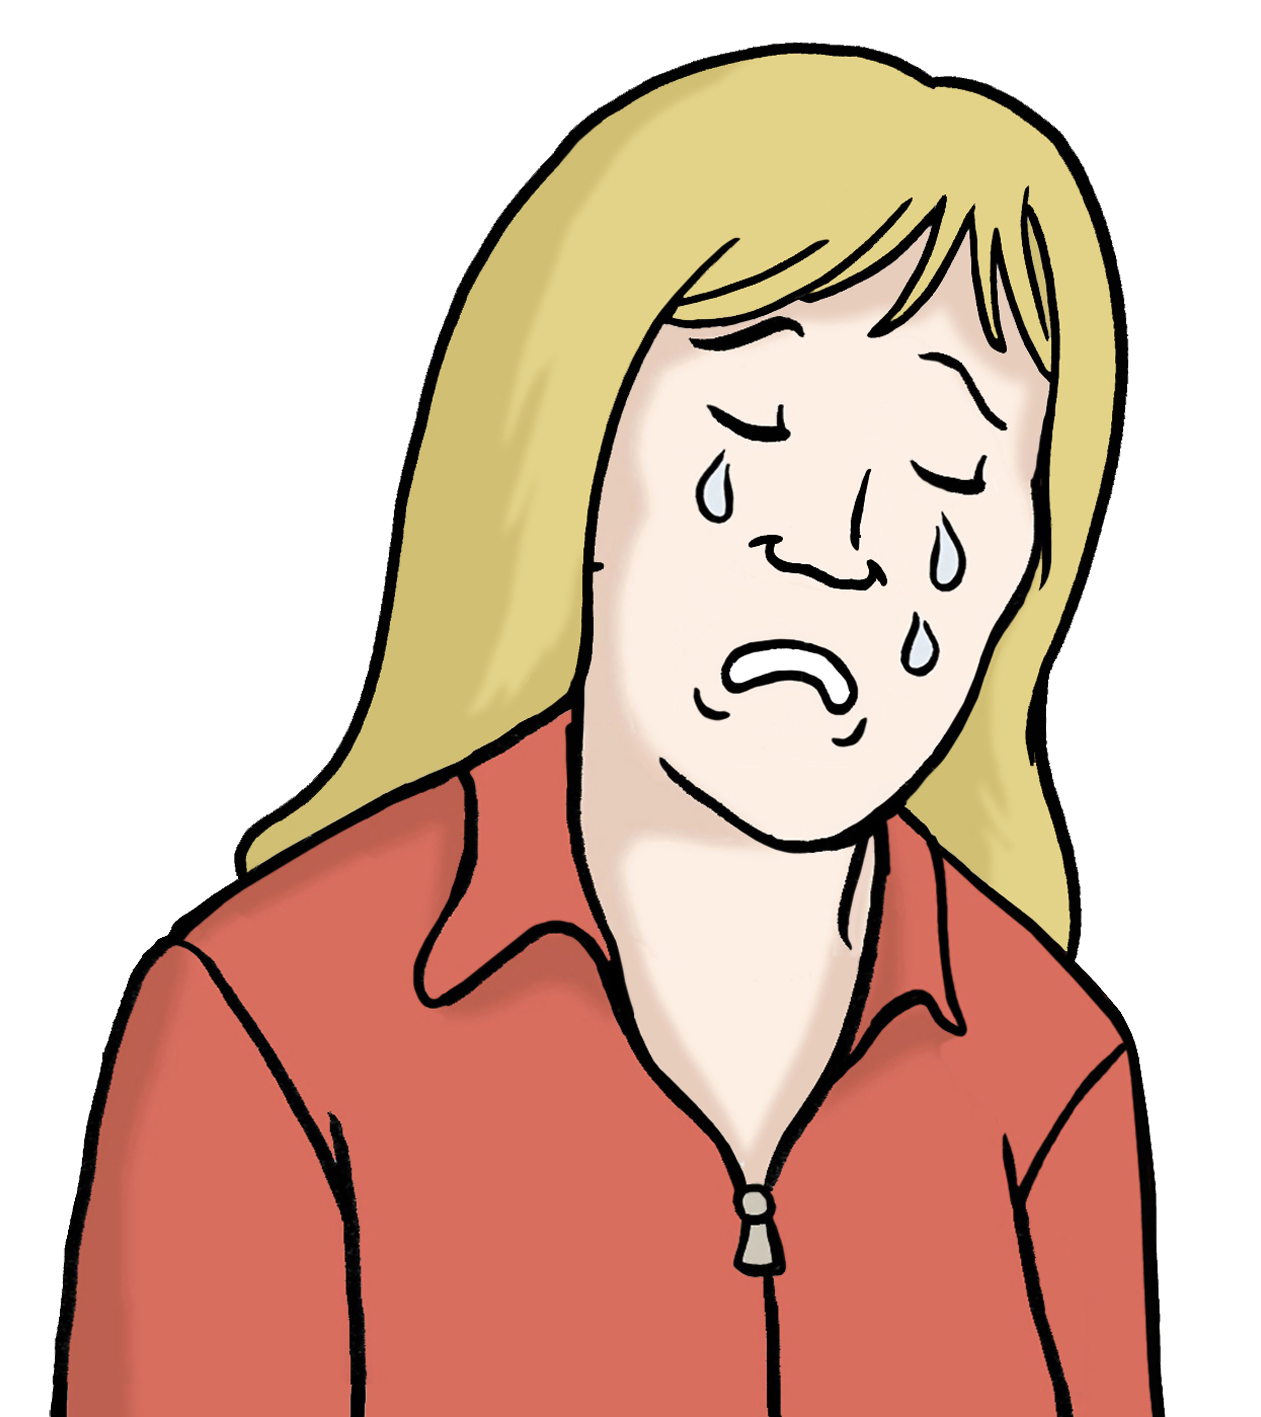 Grafik: Abbildung einer traurigen Frau. Sie weint.